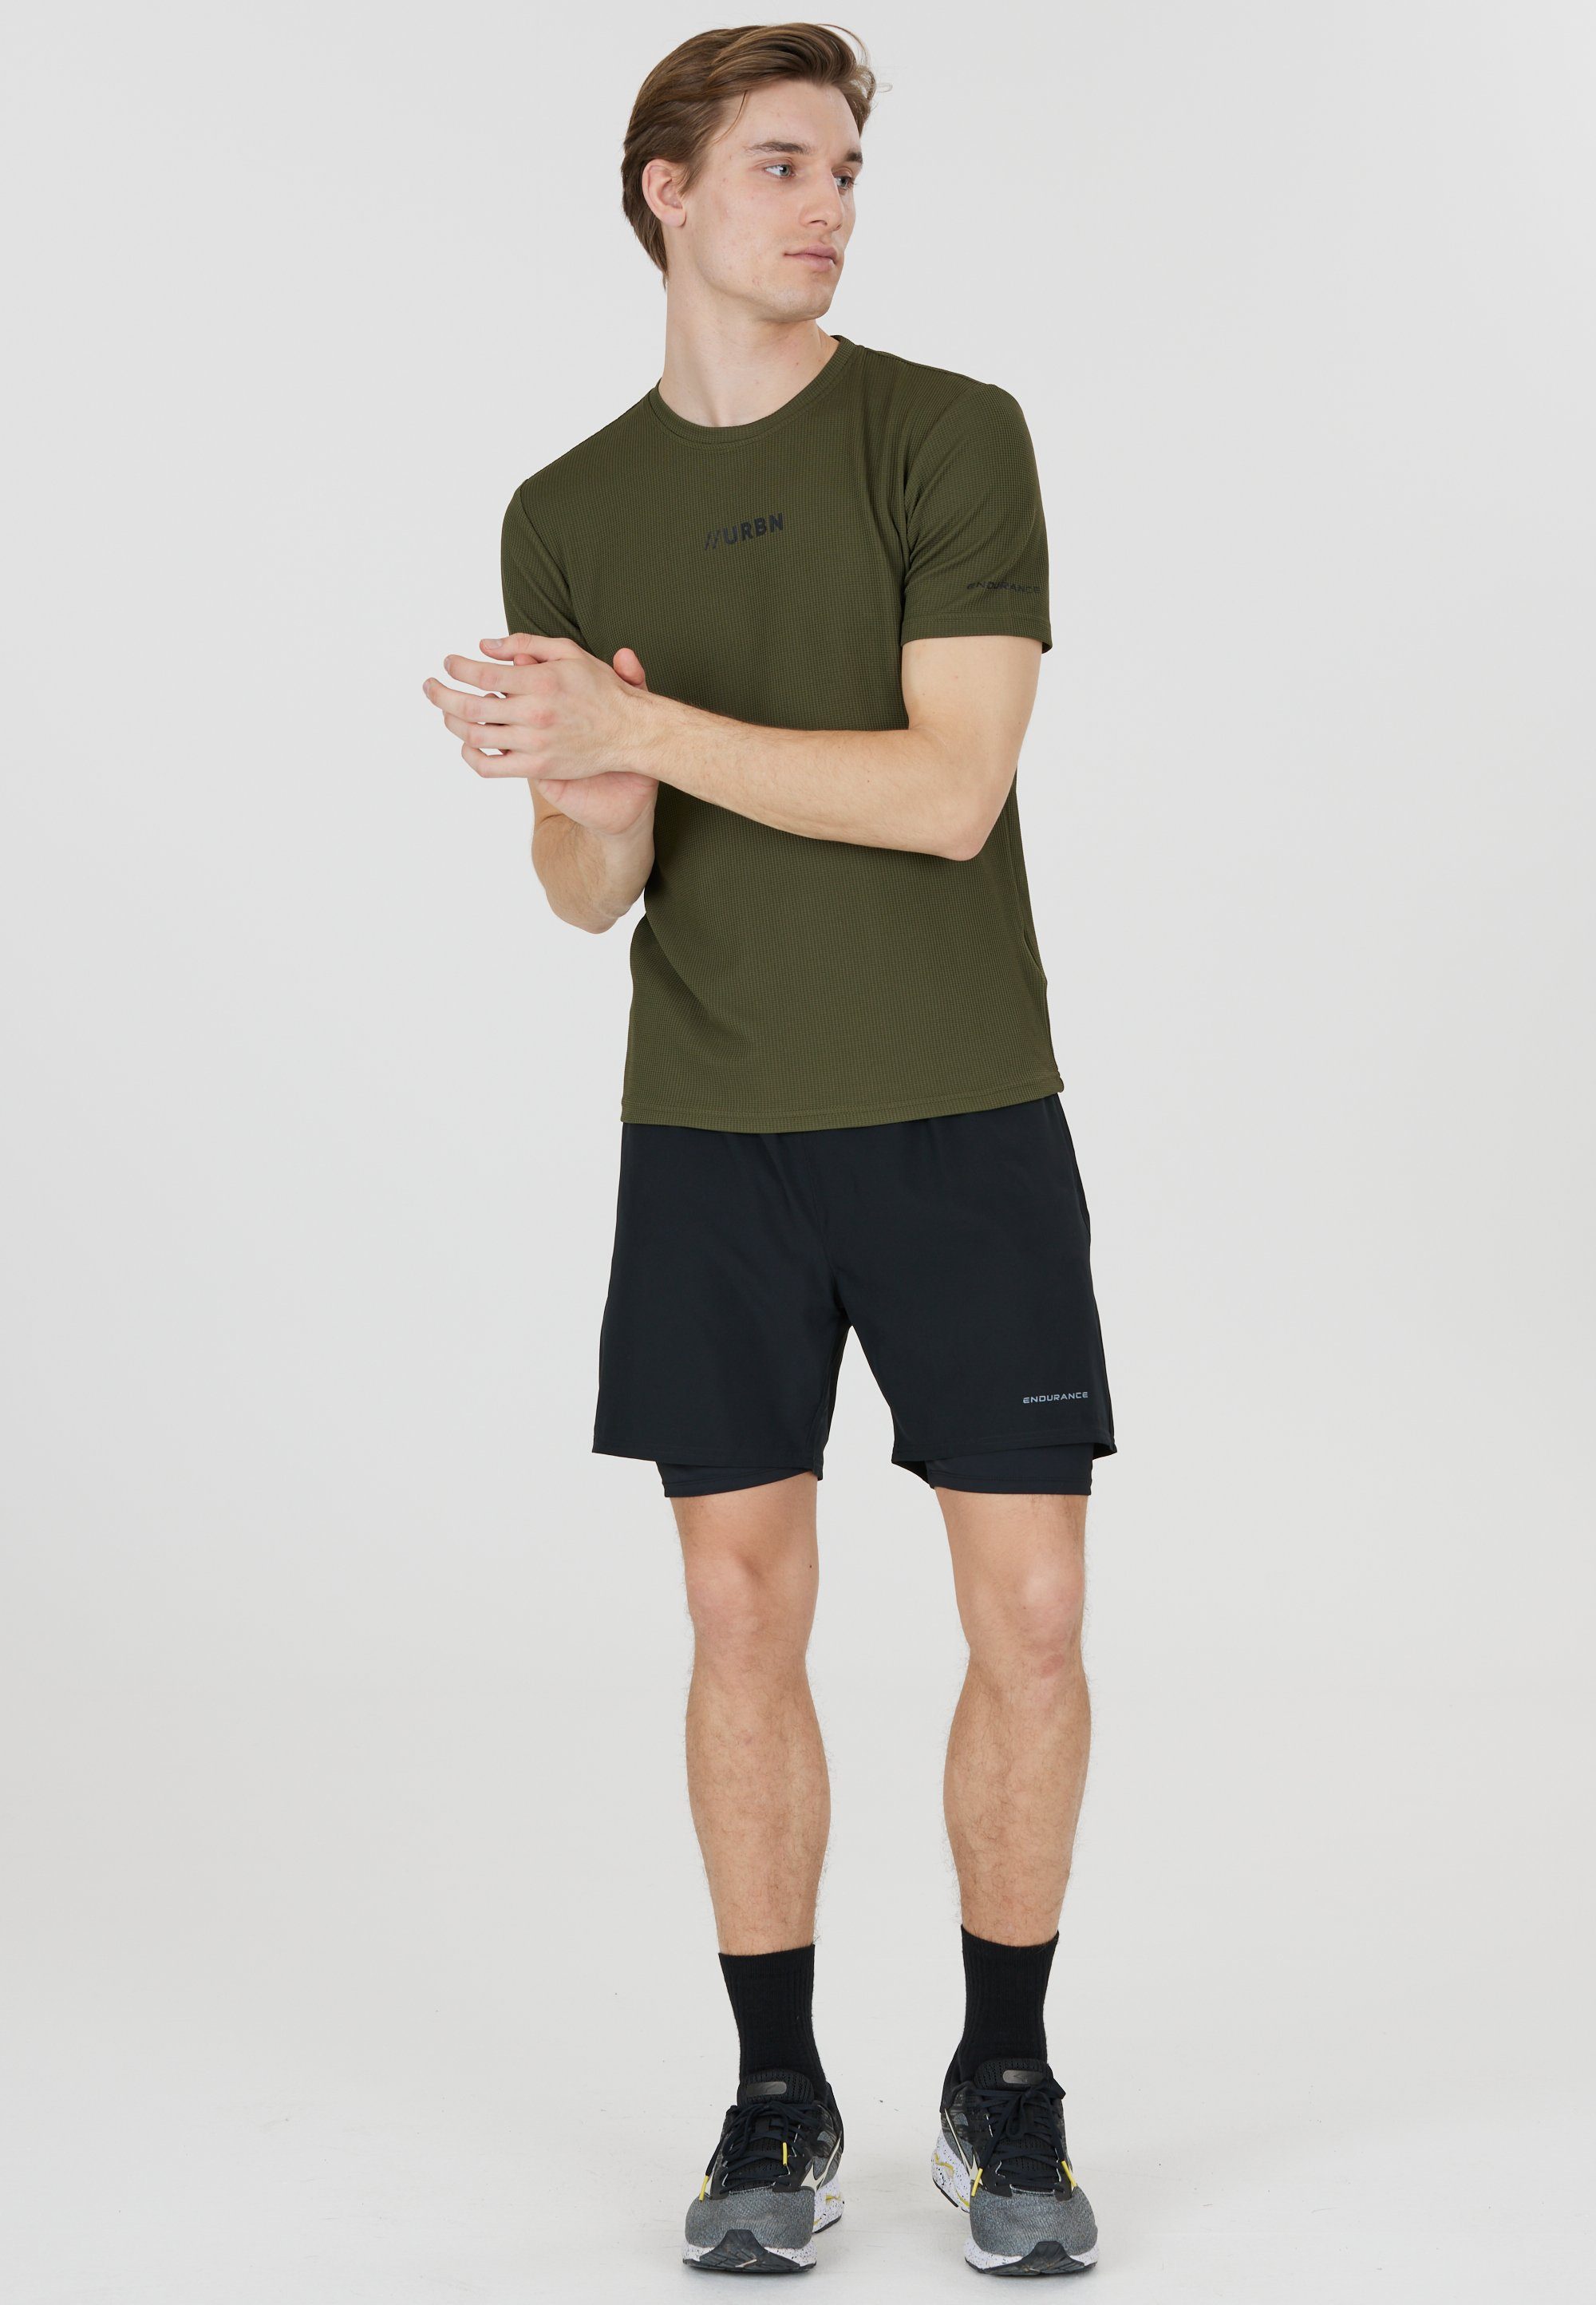 2-in-1-Design und Kros Dry Im schwarz Shorts mit Stretch-Funktion Quick ENDURANCE